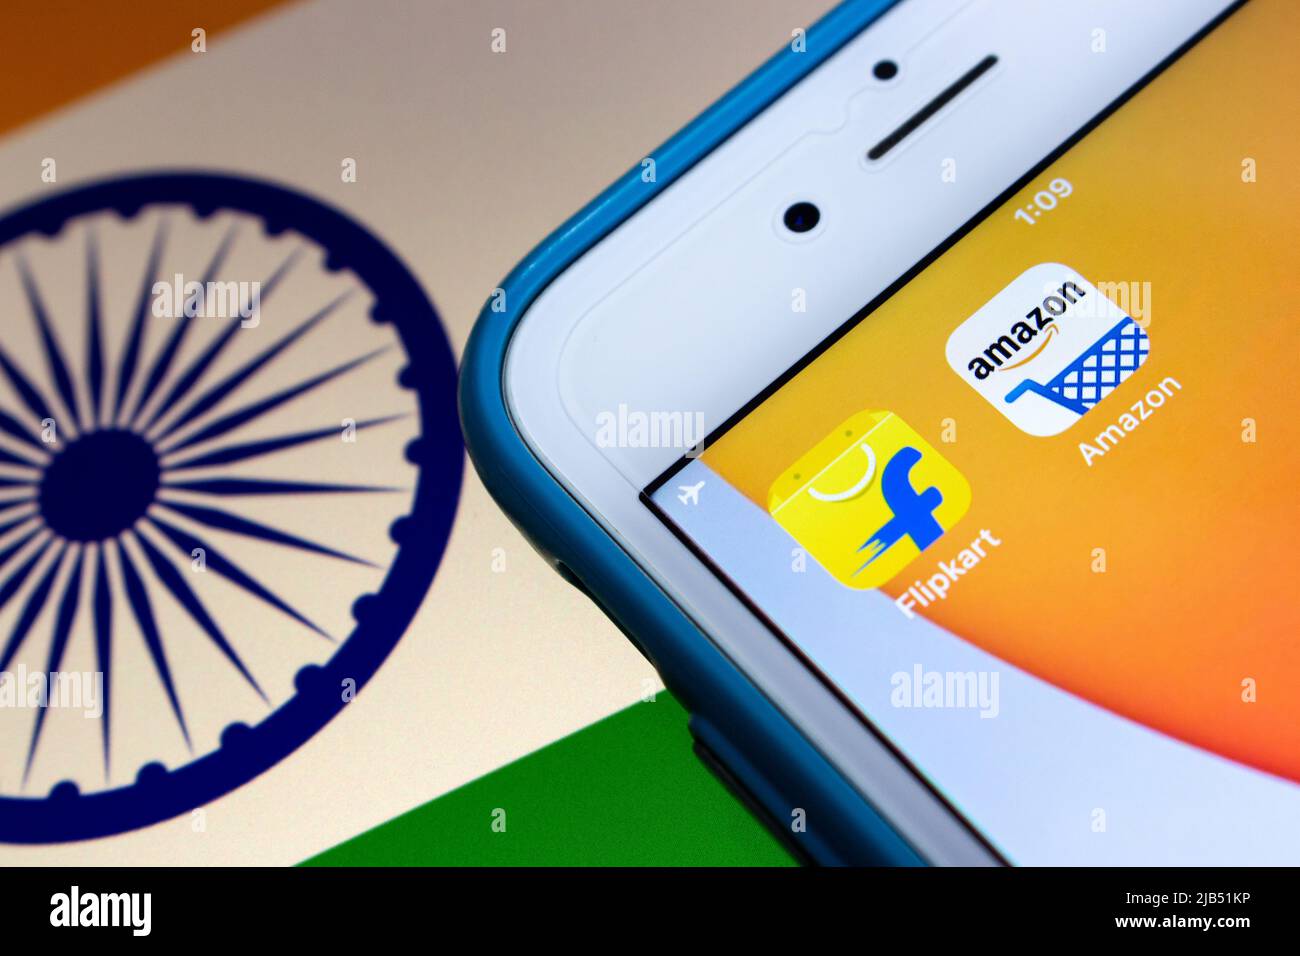 Flipkart, ein singapurisches Unternehmen mit Sitz in Karnataka, Indien, mit Amazon auf dem iPhone auf indischer Flagge. Flipkart & Amazon sind die 2 besten Online-Händler in Indien Stockfoto